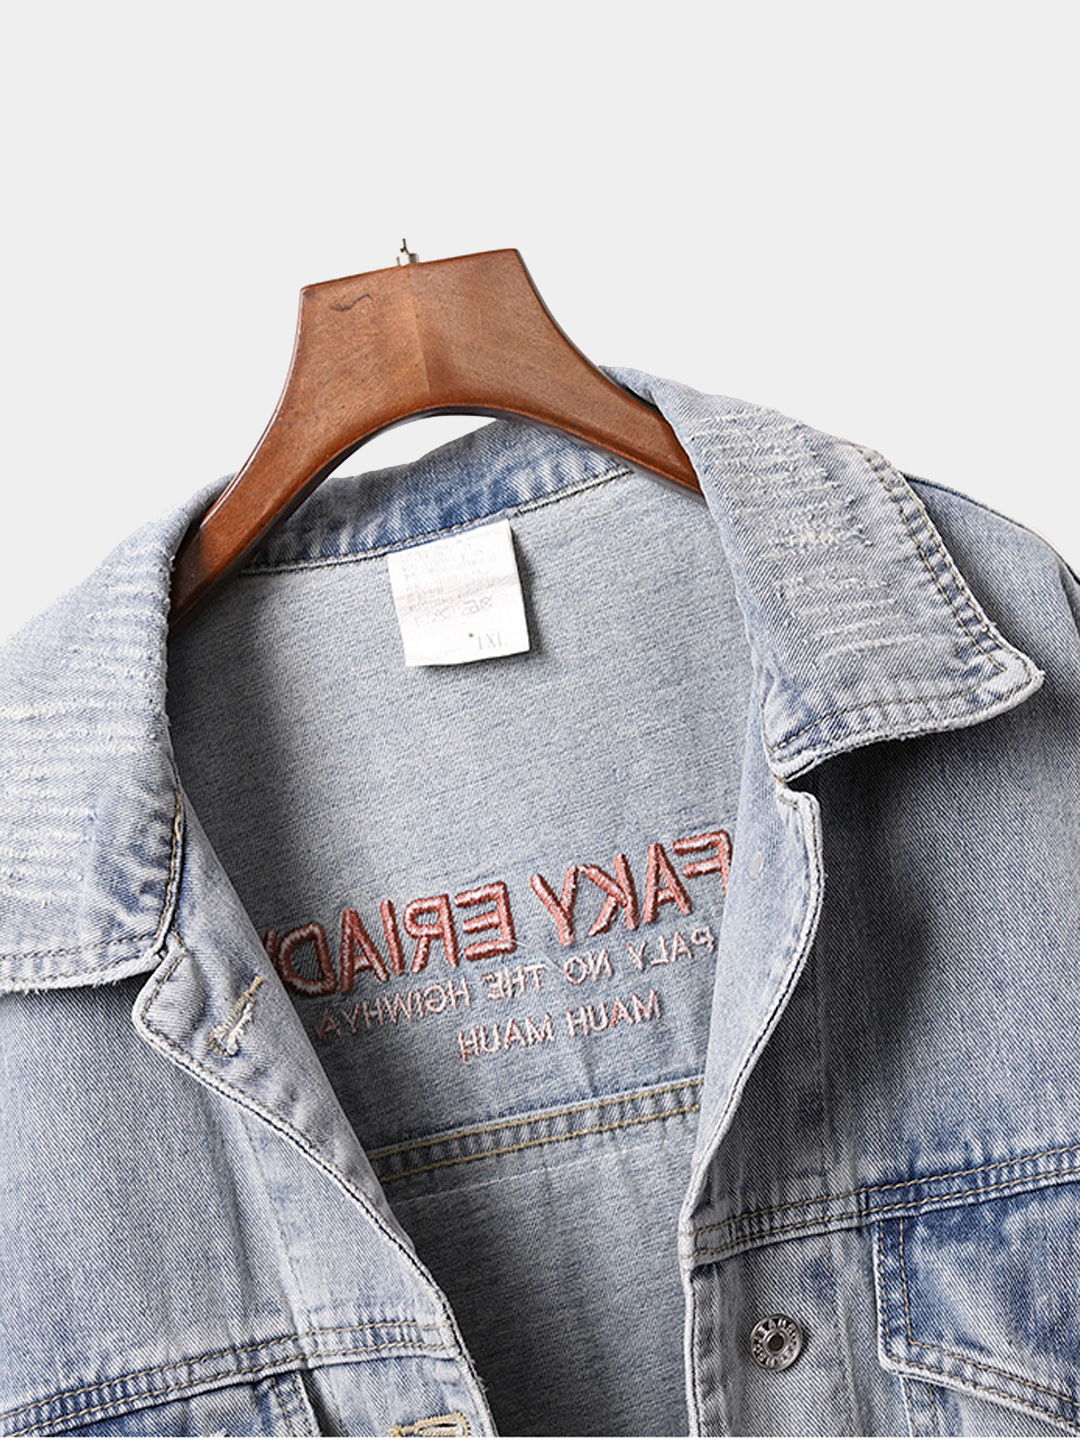 Женская джинсовая куртка с принтом купить по цене 3270 ₽ винтернет-магазине KazanExpress